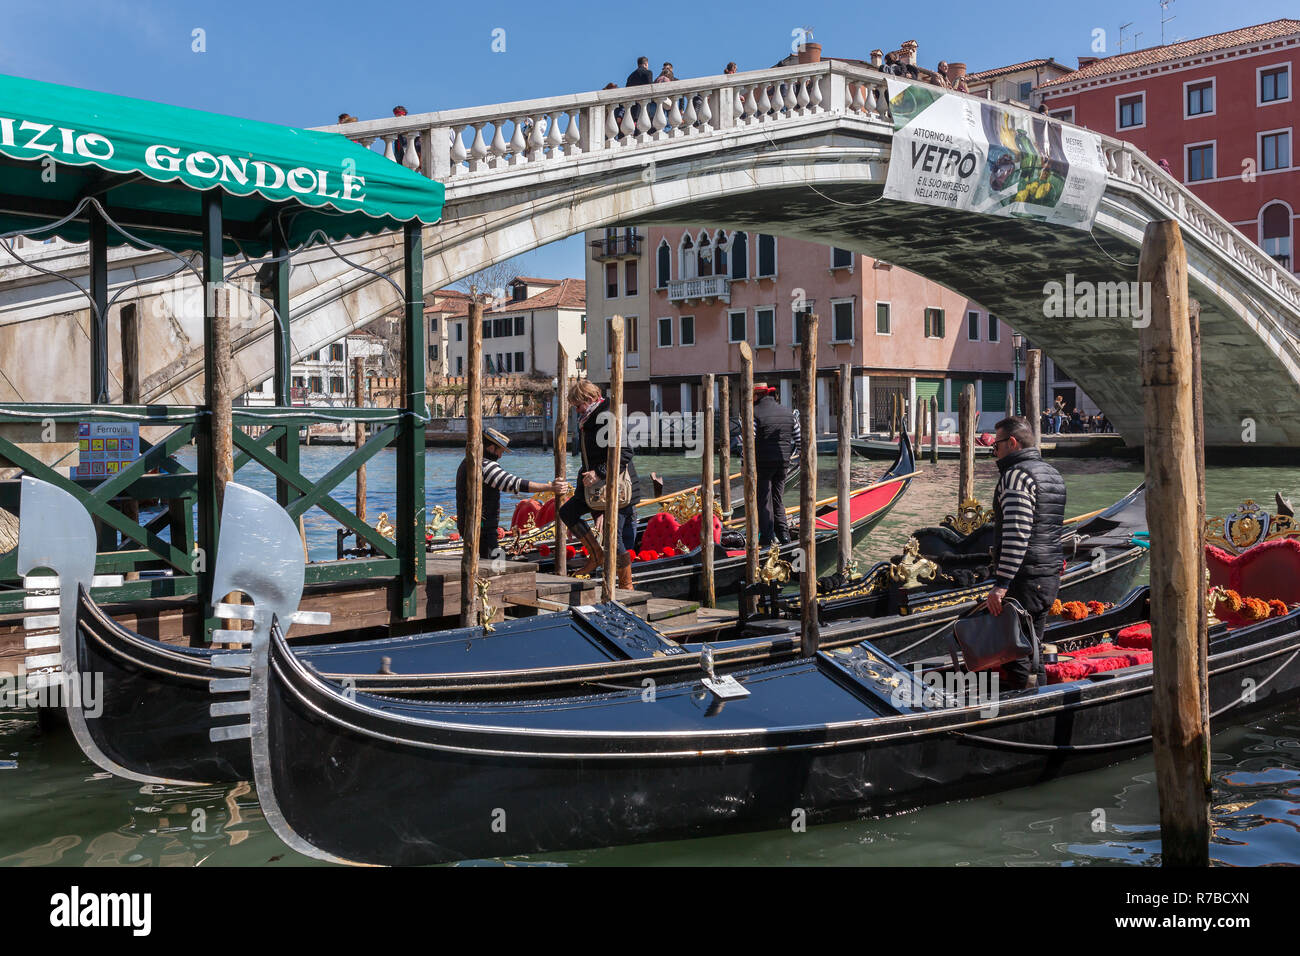 Venezia, Italia - 23 Marzo 2018: Gondola parcheggio nei pressi del famoso ponte Realto sul Canal Grande a Venezia con il Servizio Gondole segno Foto Stock